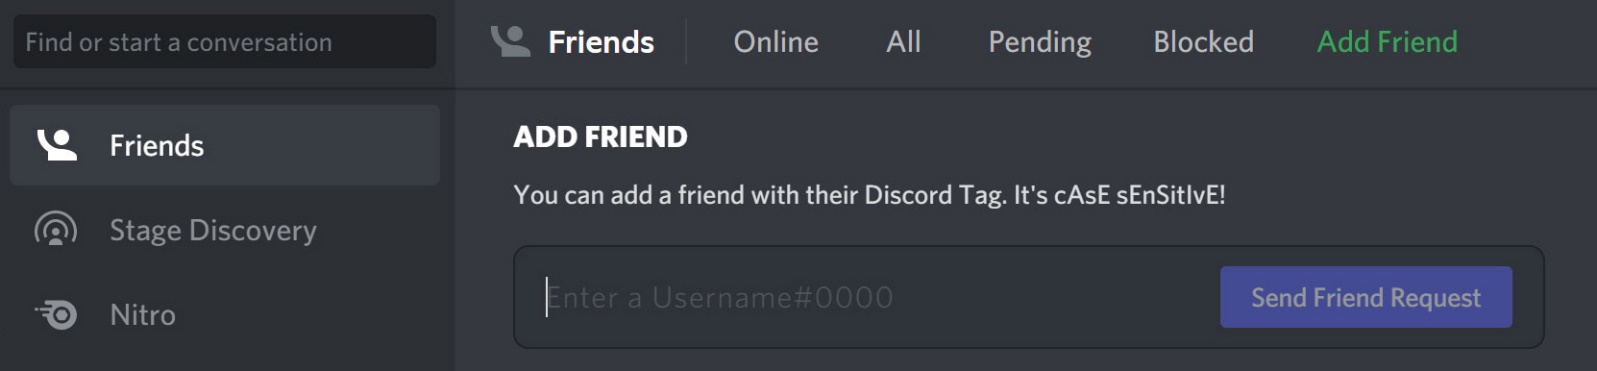 Add a friend in Discord